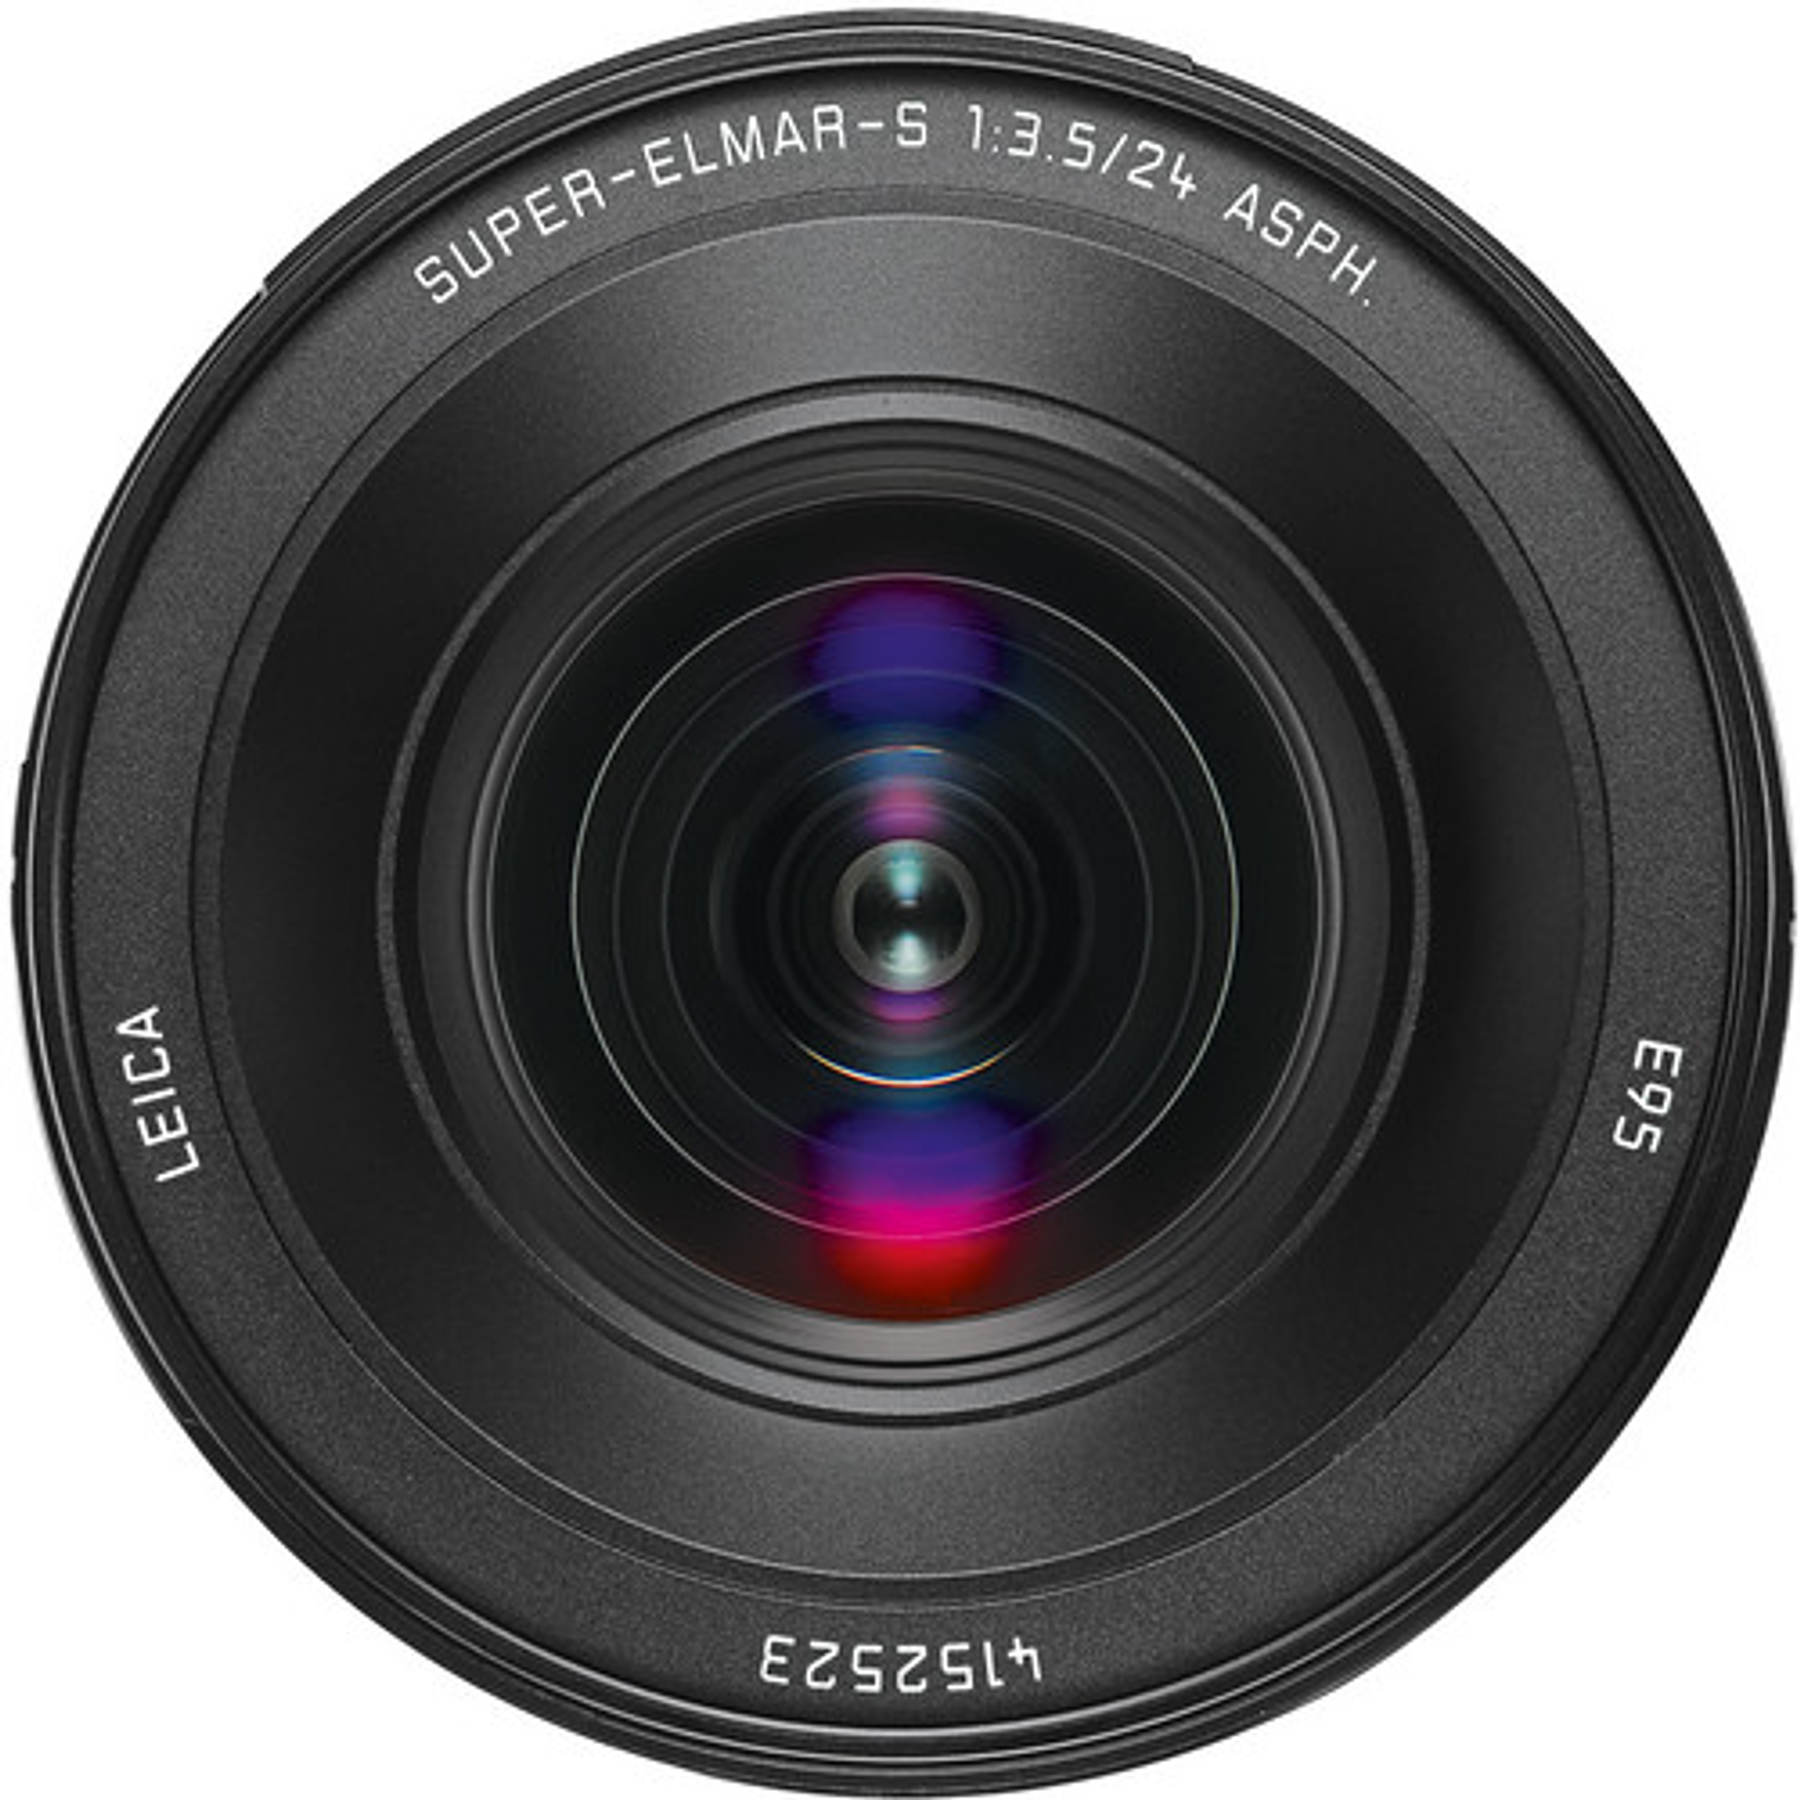 Leica 24mm f/3.5 Super-Elmar-S ASPH